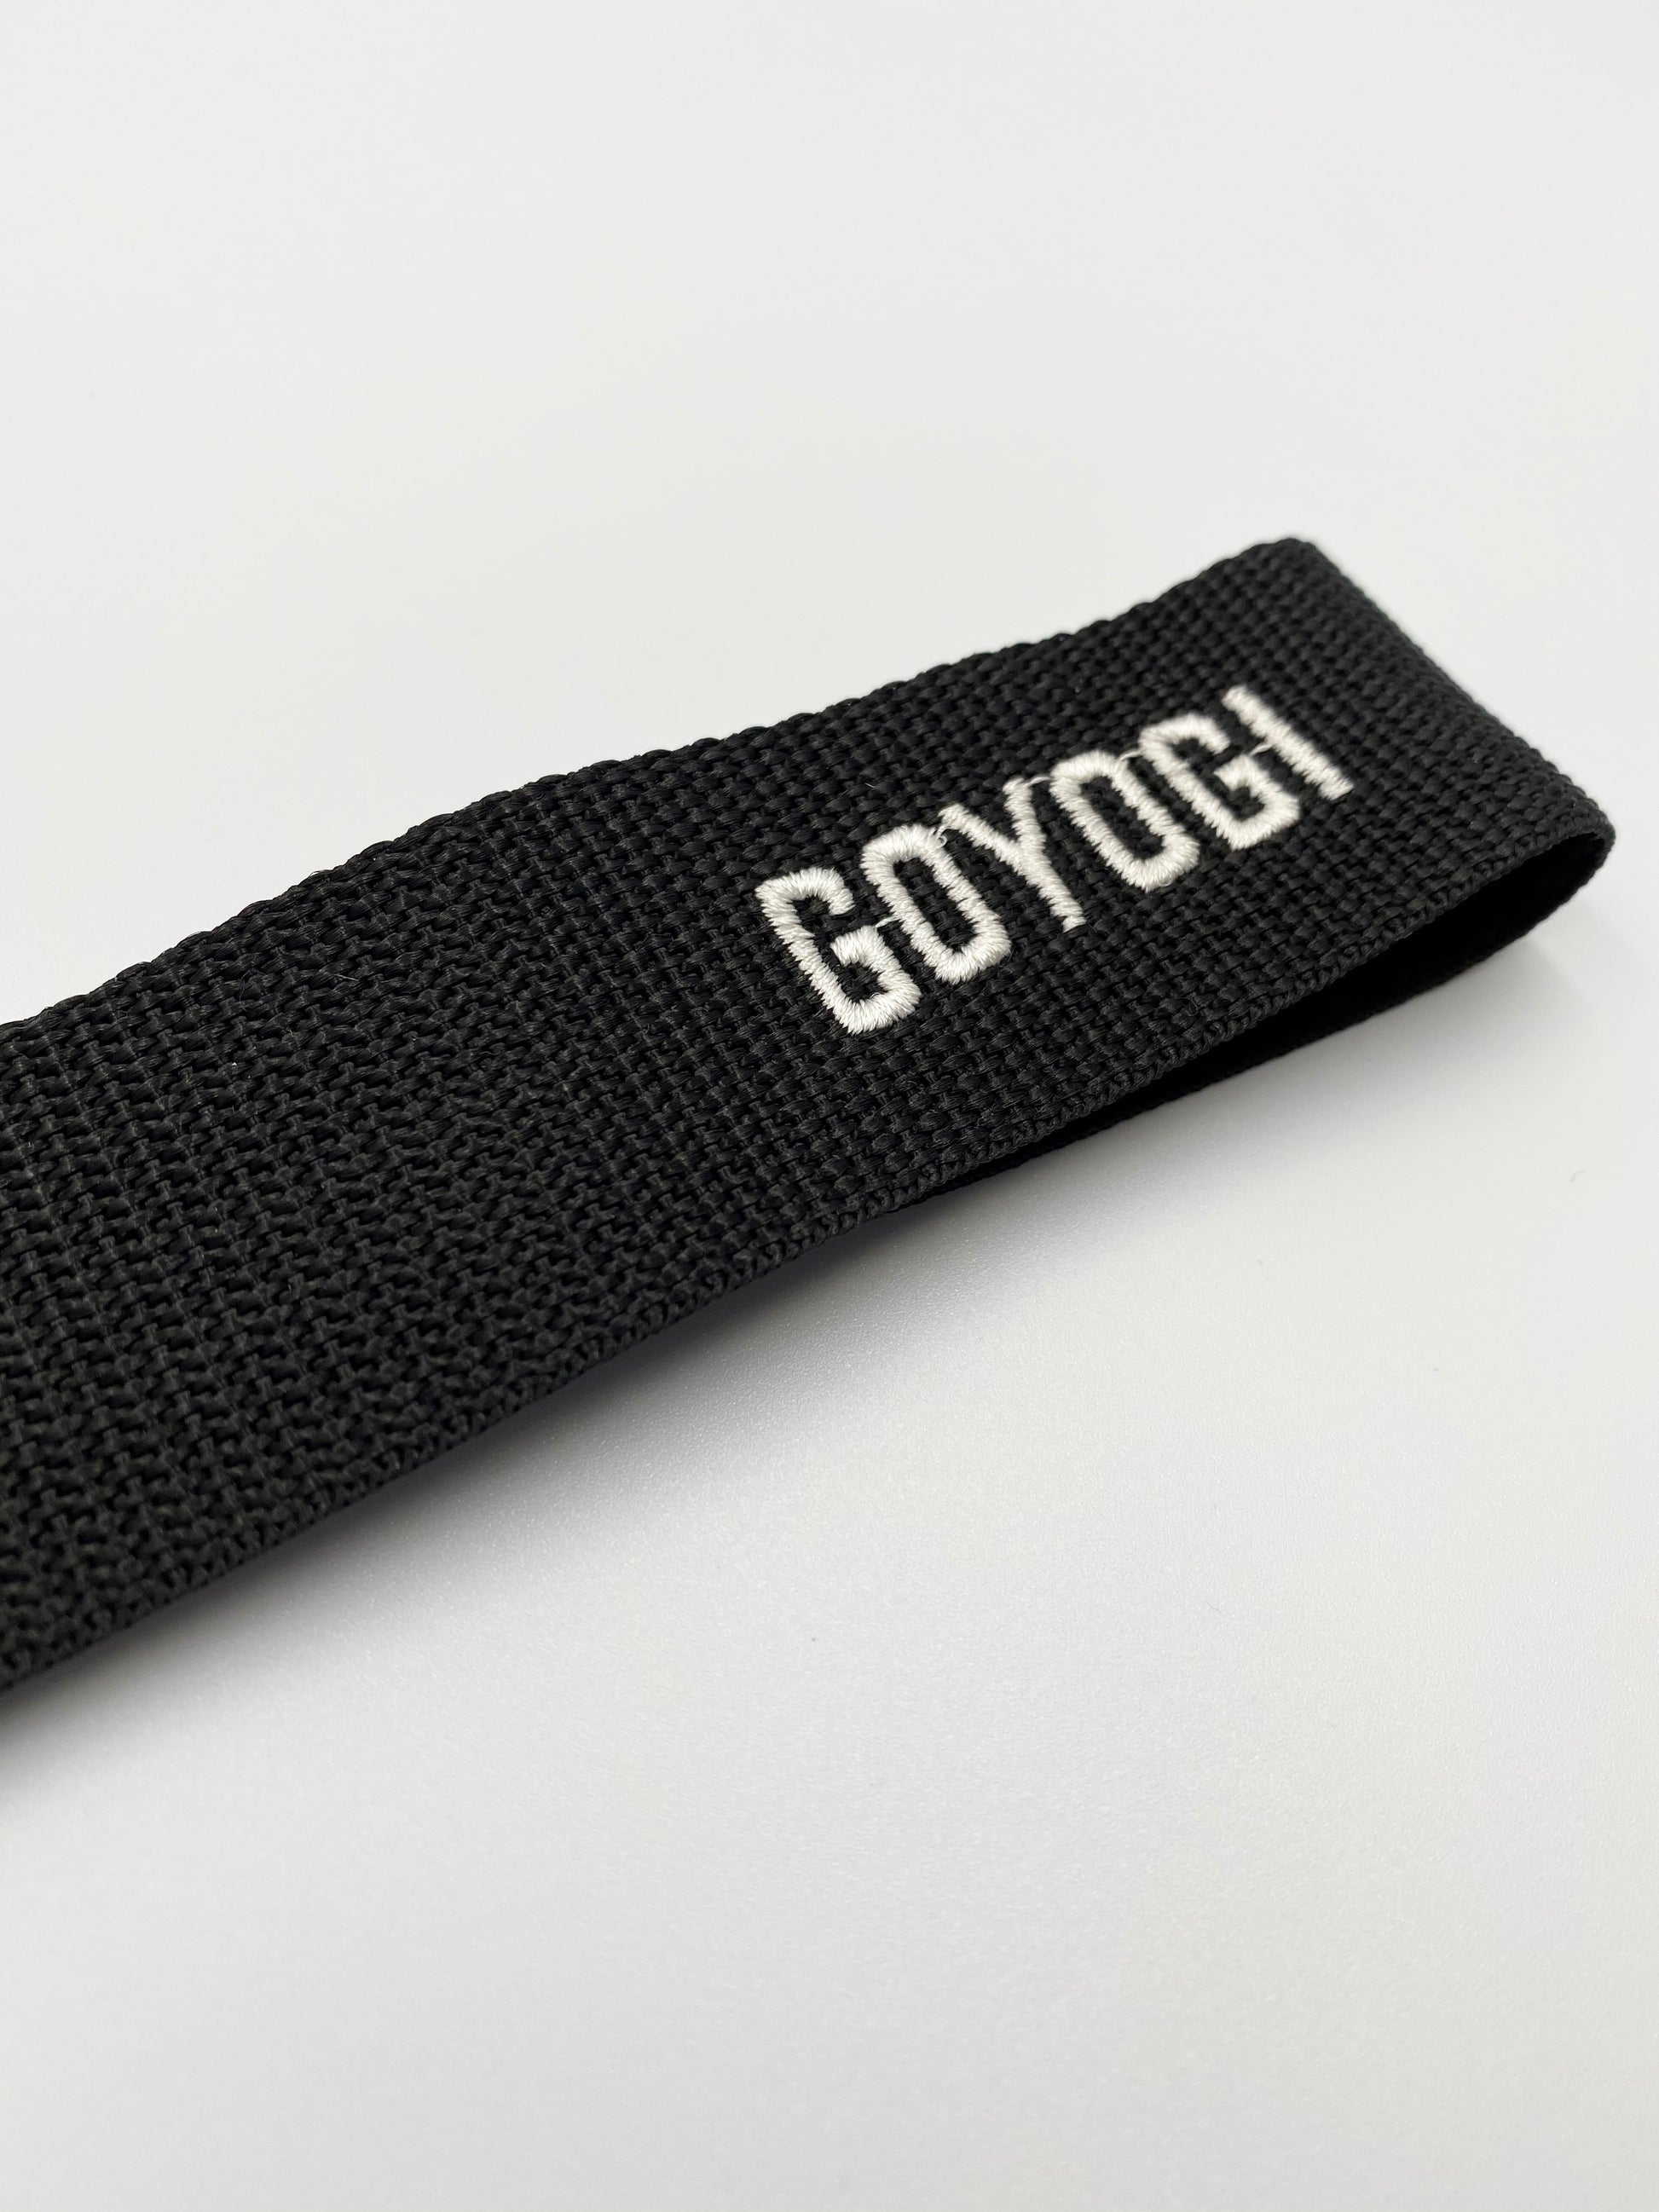 GOYOGI Signature Yoga Mat - Mørkegrøn - Allround Naturgummi yogamåtte –